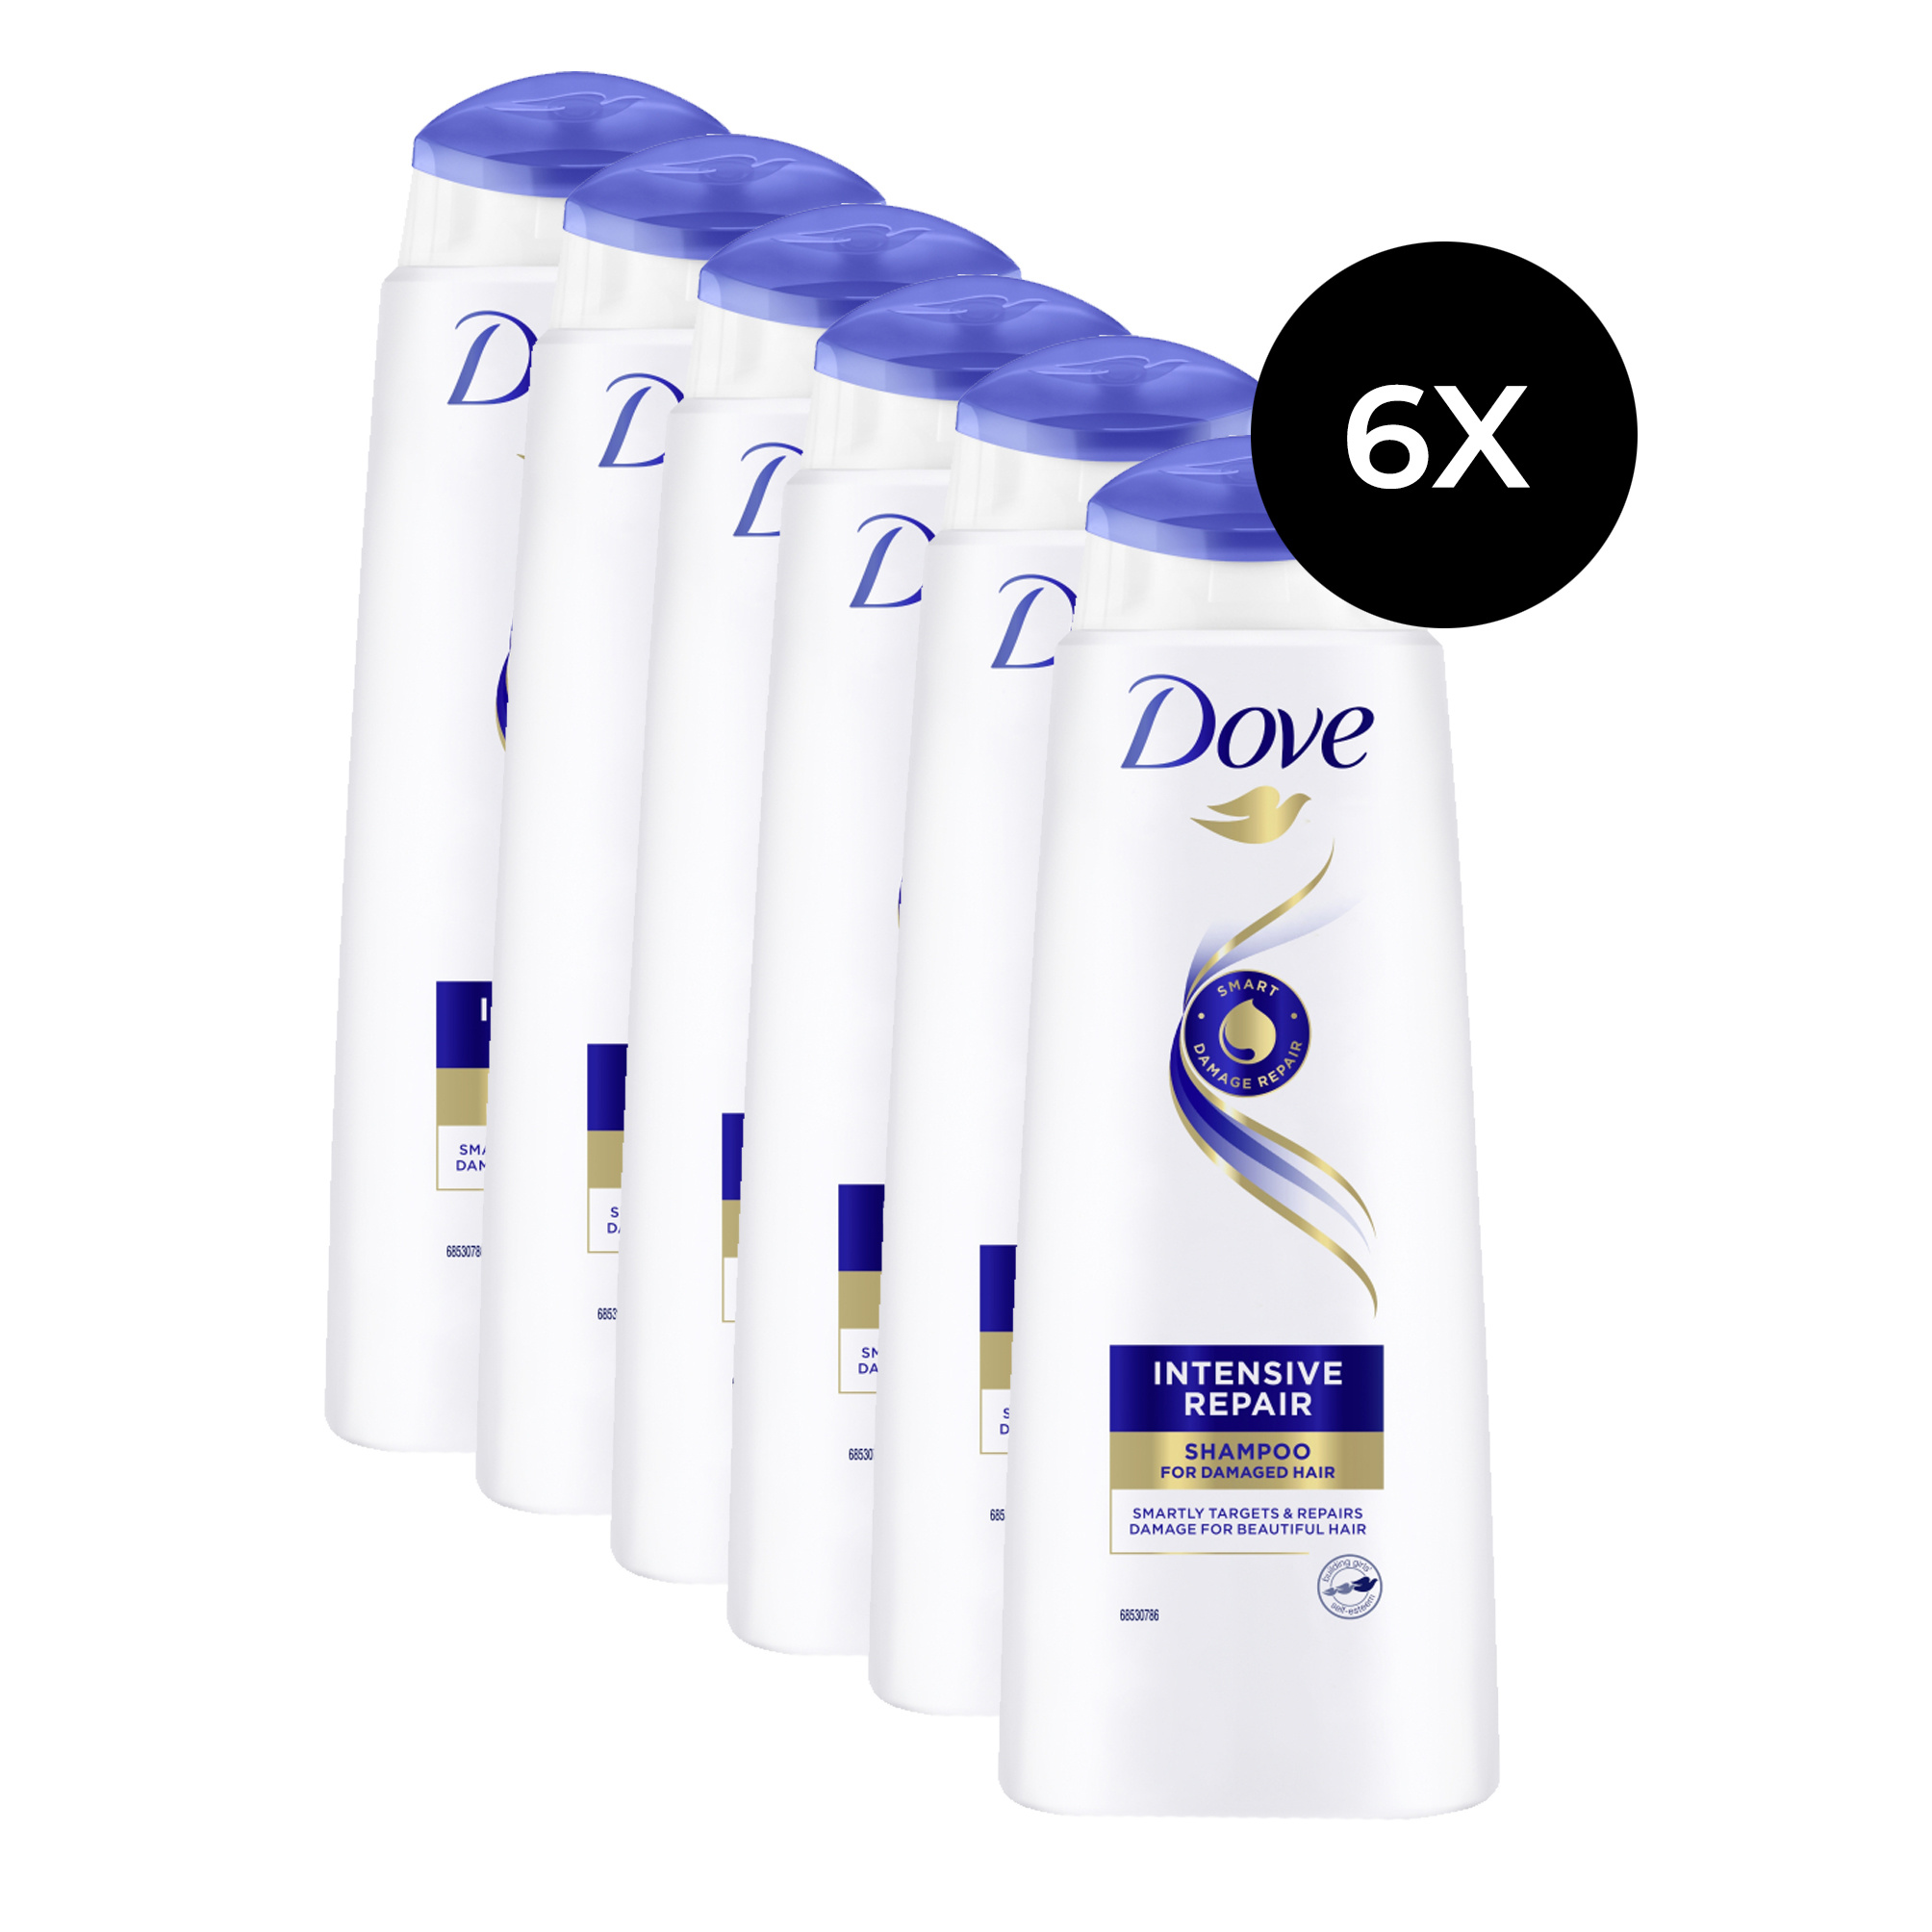 Dove Intensive Repair Shampooing - 6x 400 ml (pour les cheveux abîmés)